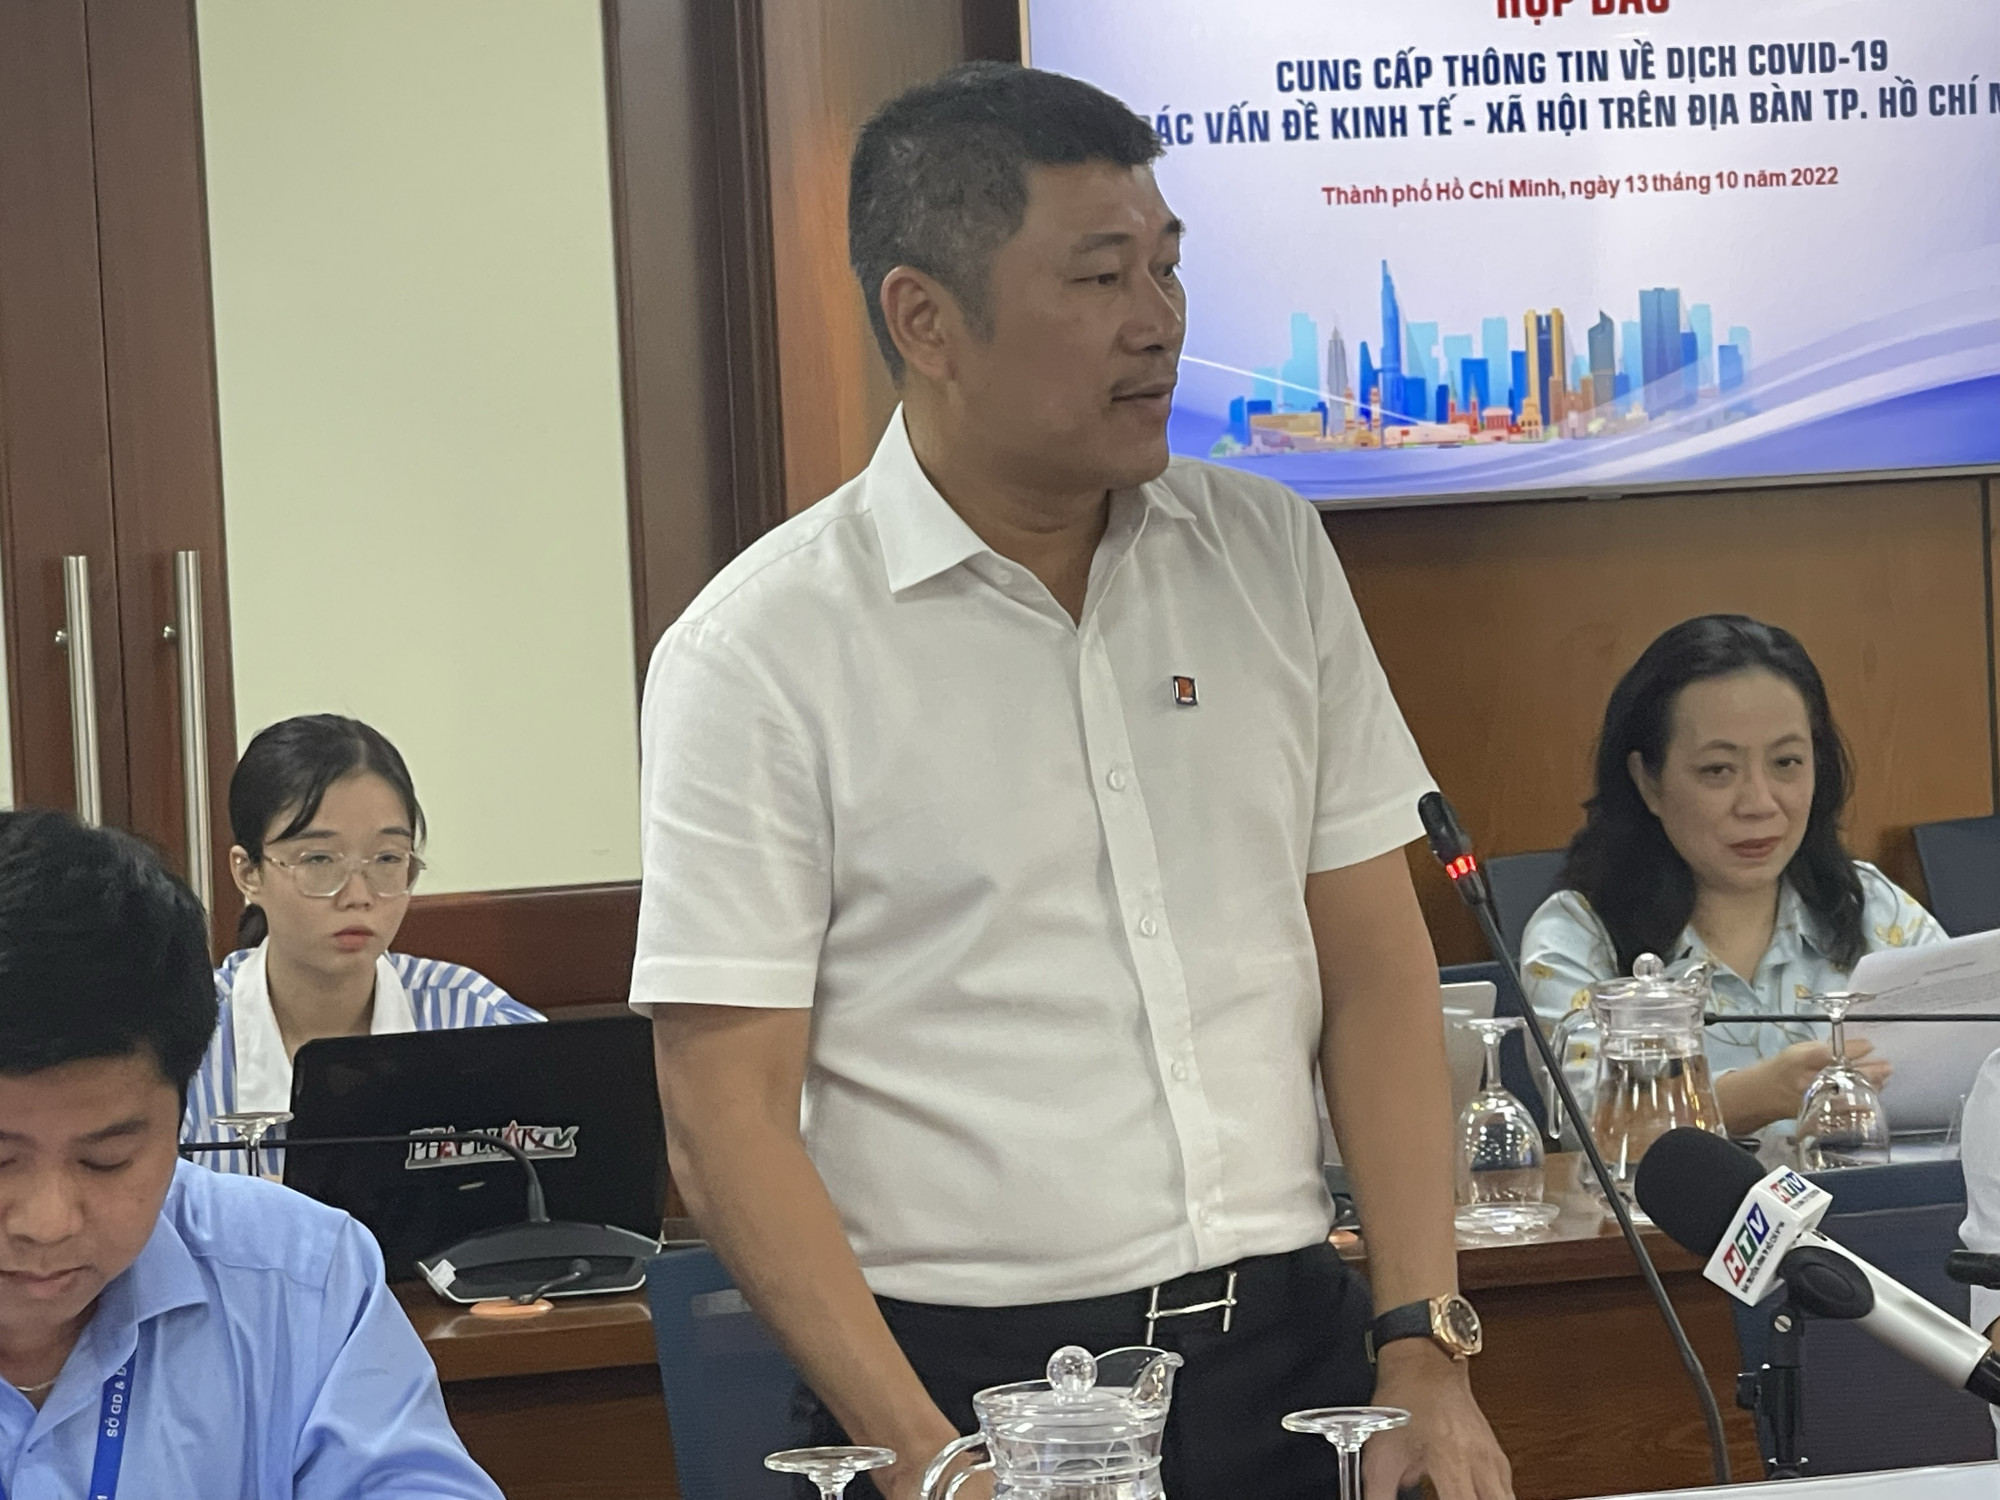 Ông Phạm Anh Tuấn - Giám đốc Petrolimex Sài Gòn tại buổi họp báo ngày 13/10.